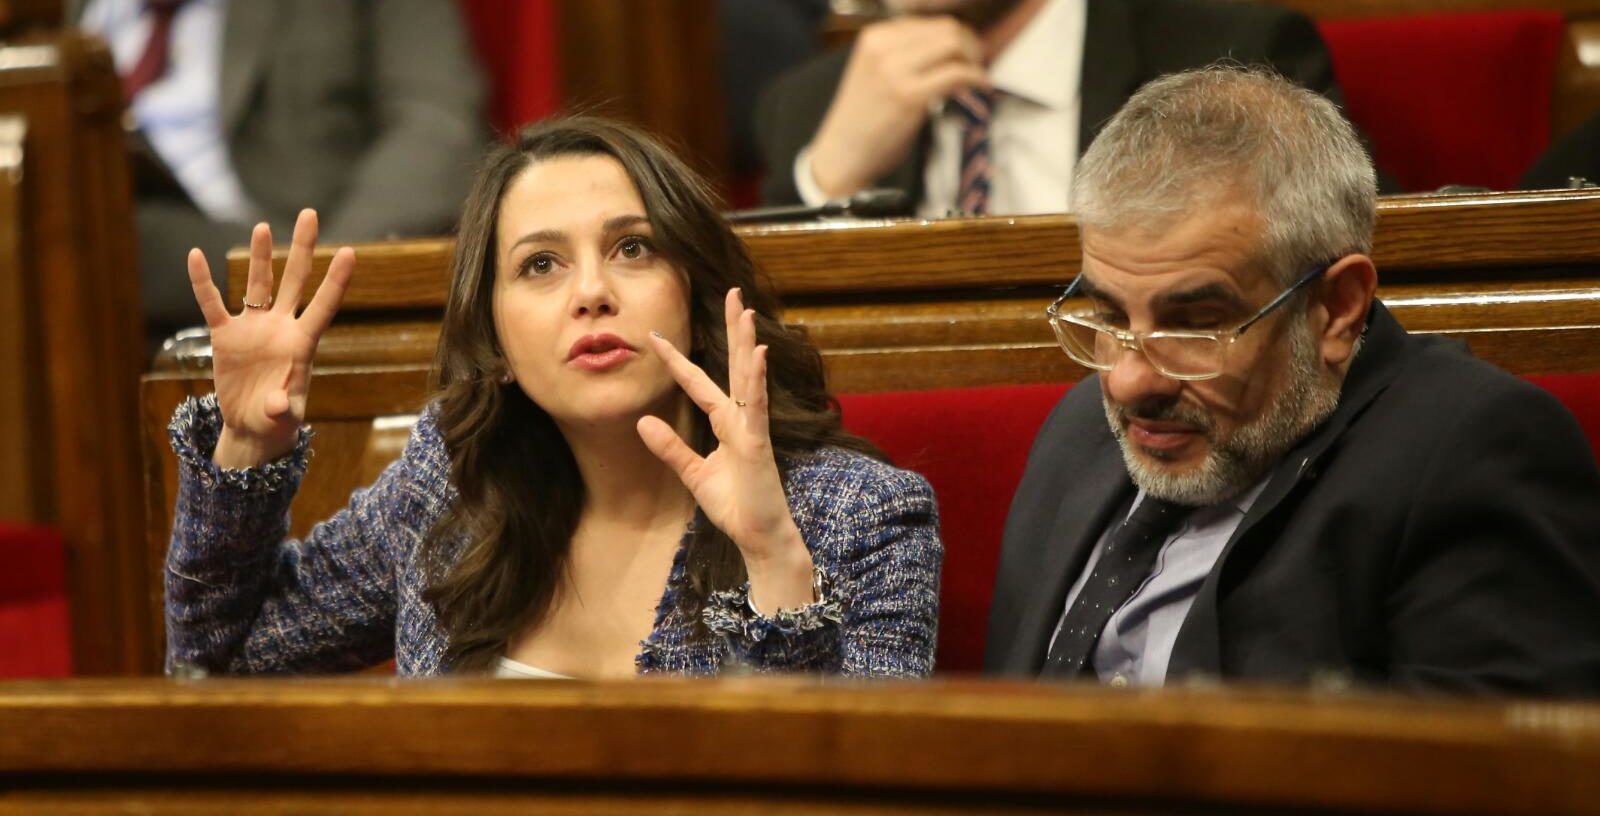 Inés Arrimadas i Carlos Carrizosa gesticulen asseguts als seus escons del parlament (fotografia: Albert Salamé).